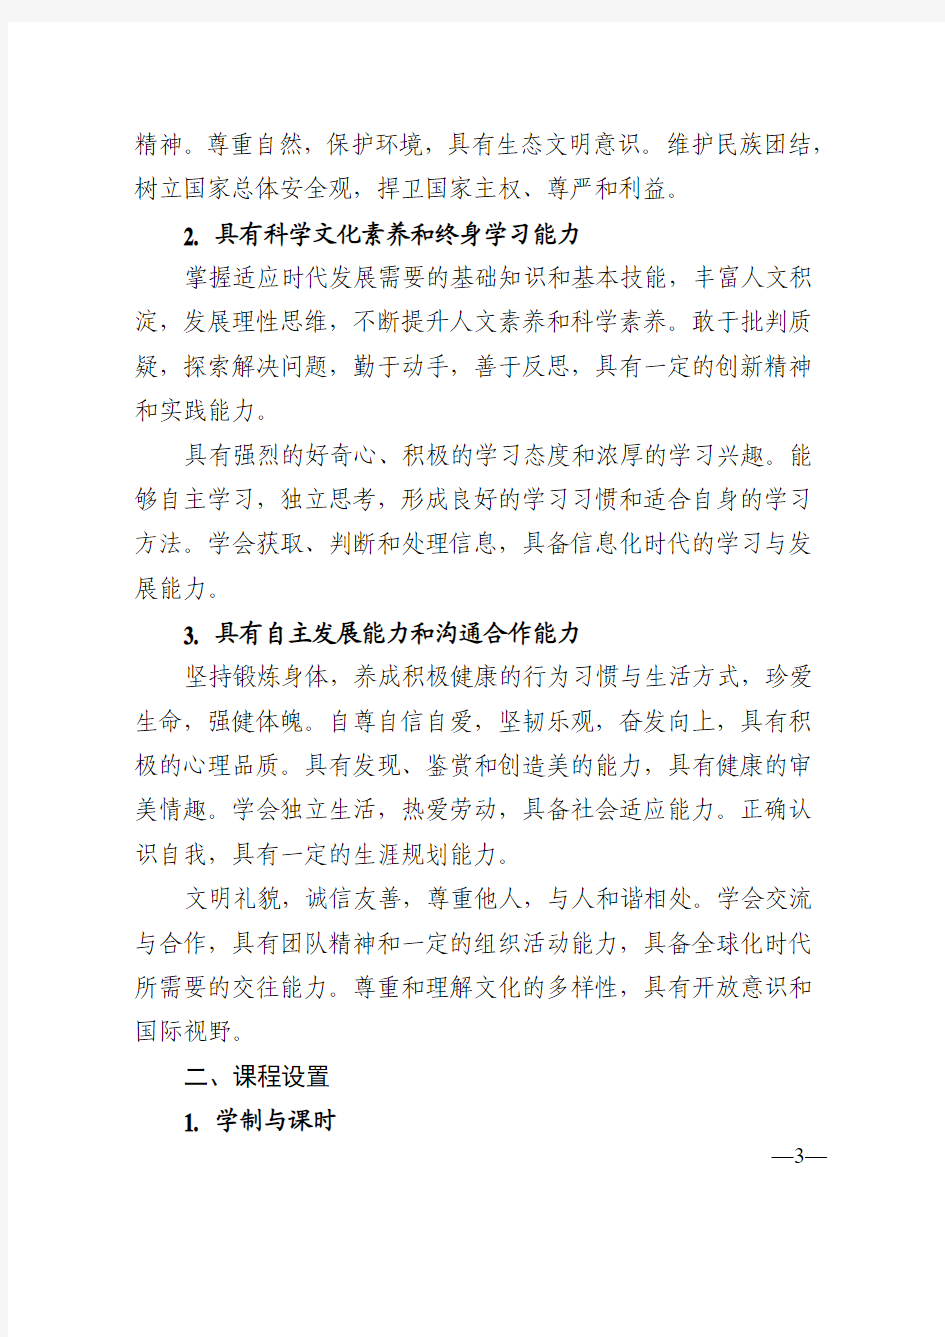 湖南省普通高中课程方案(2020年版)